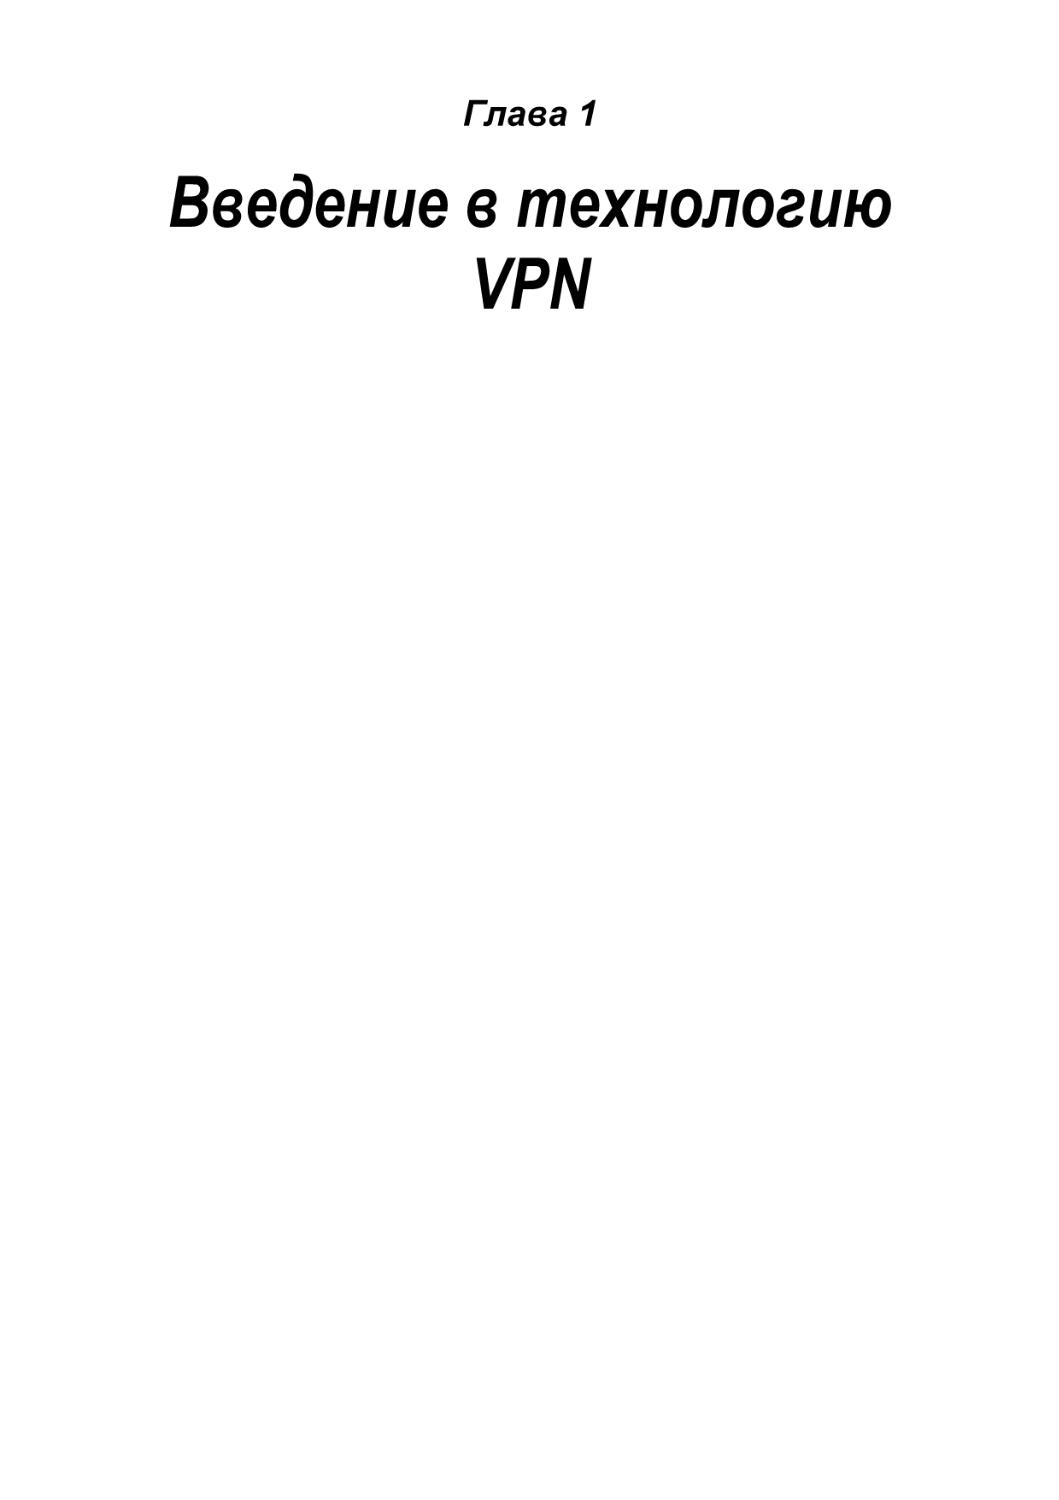 Введение в технологию VPN